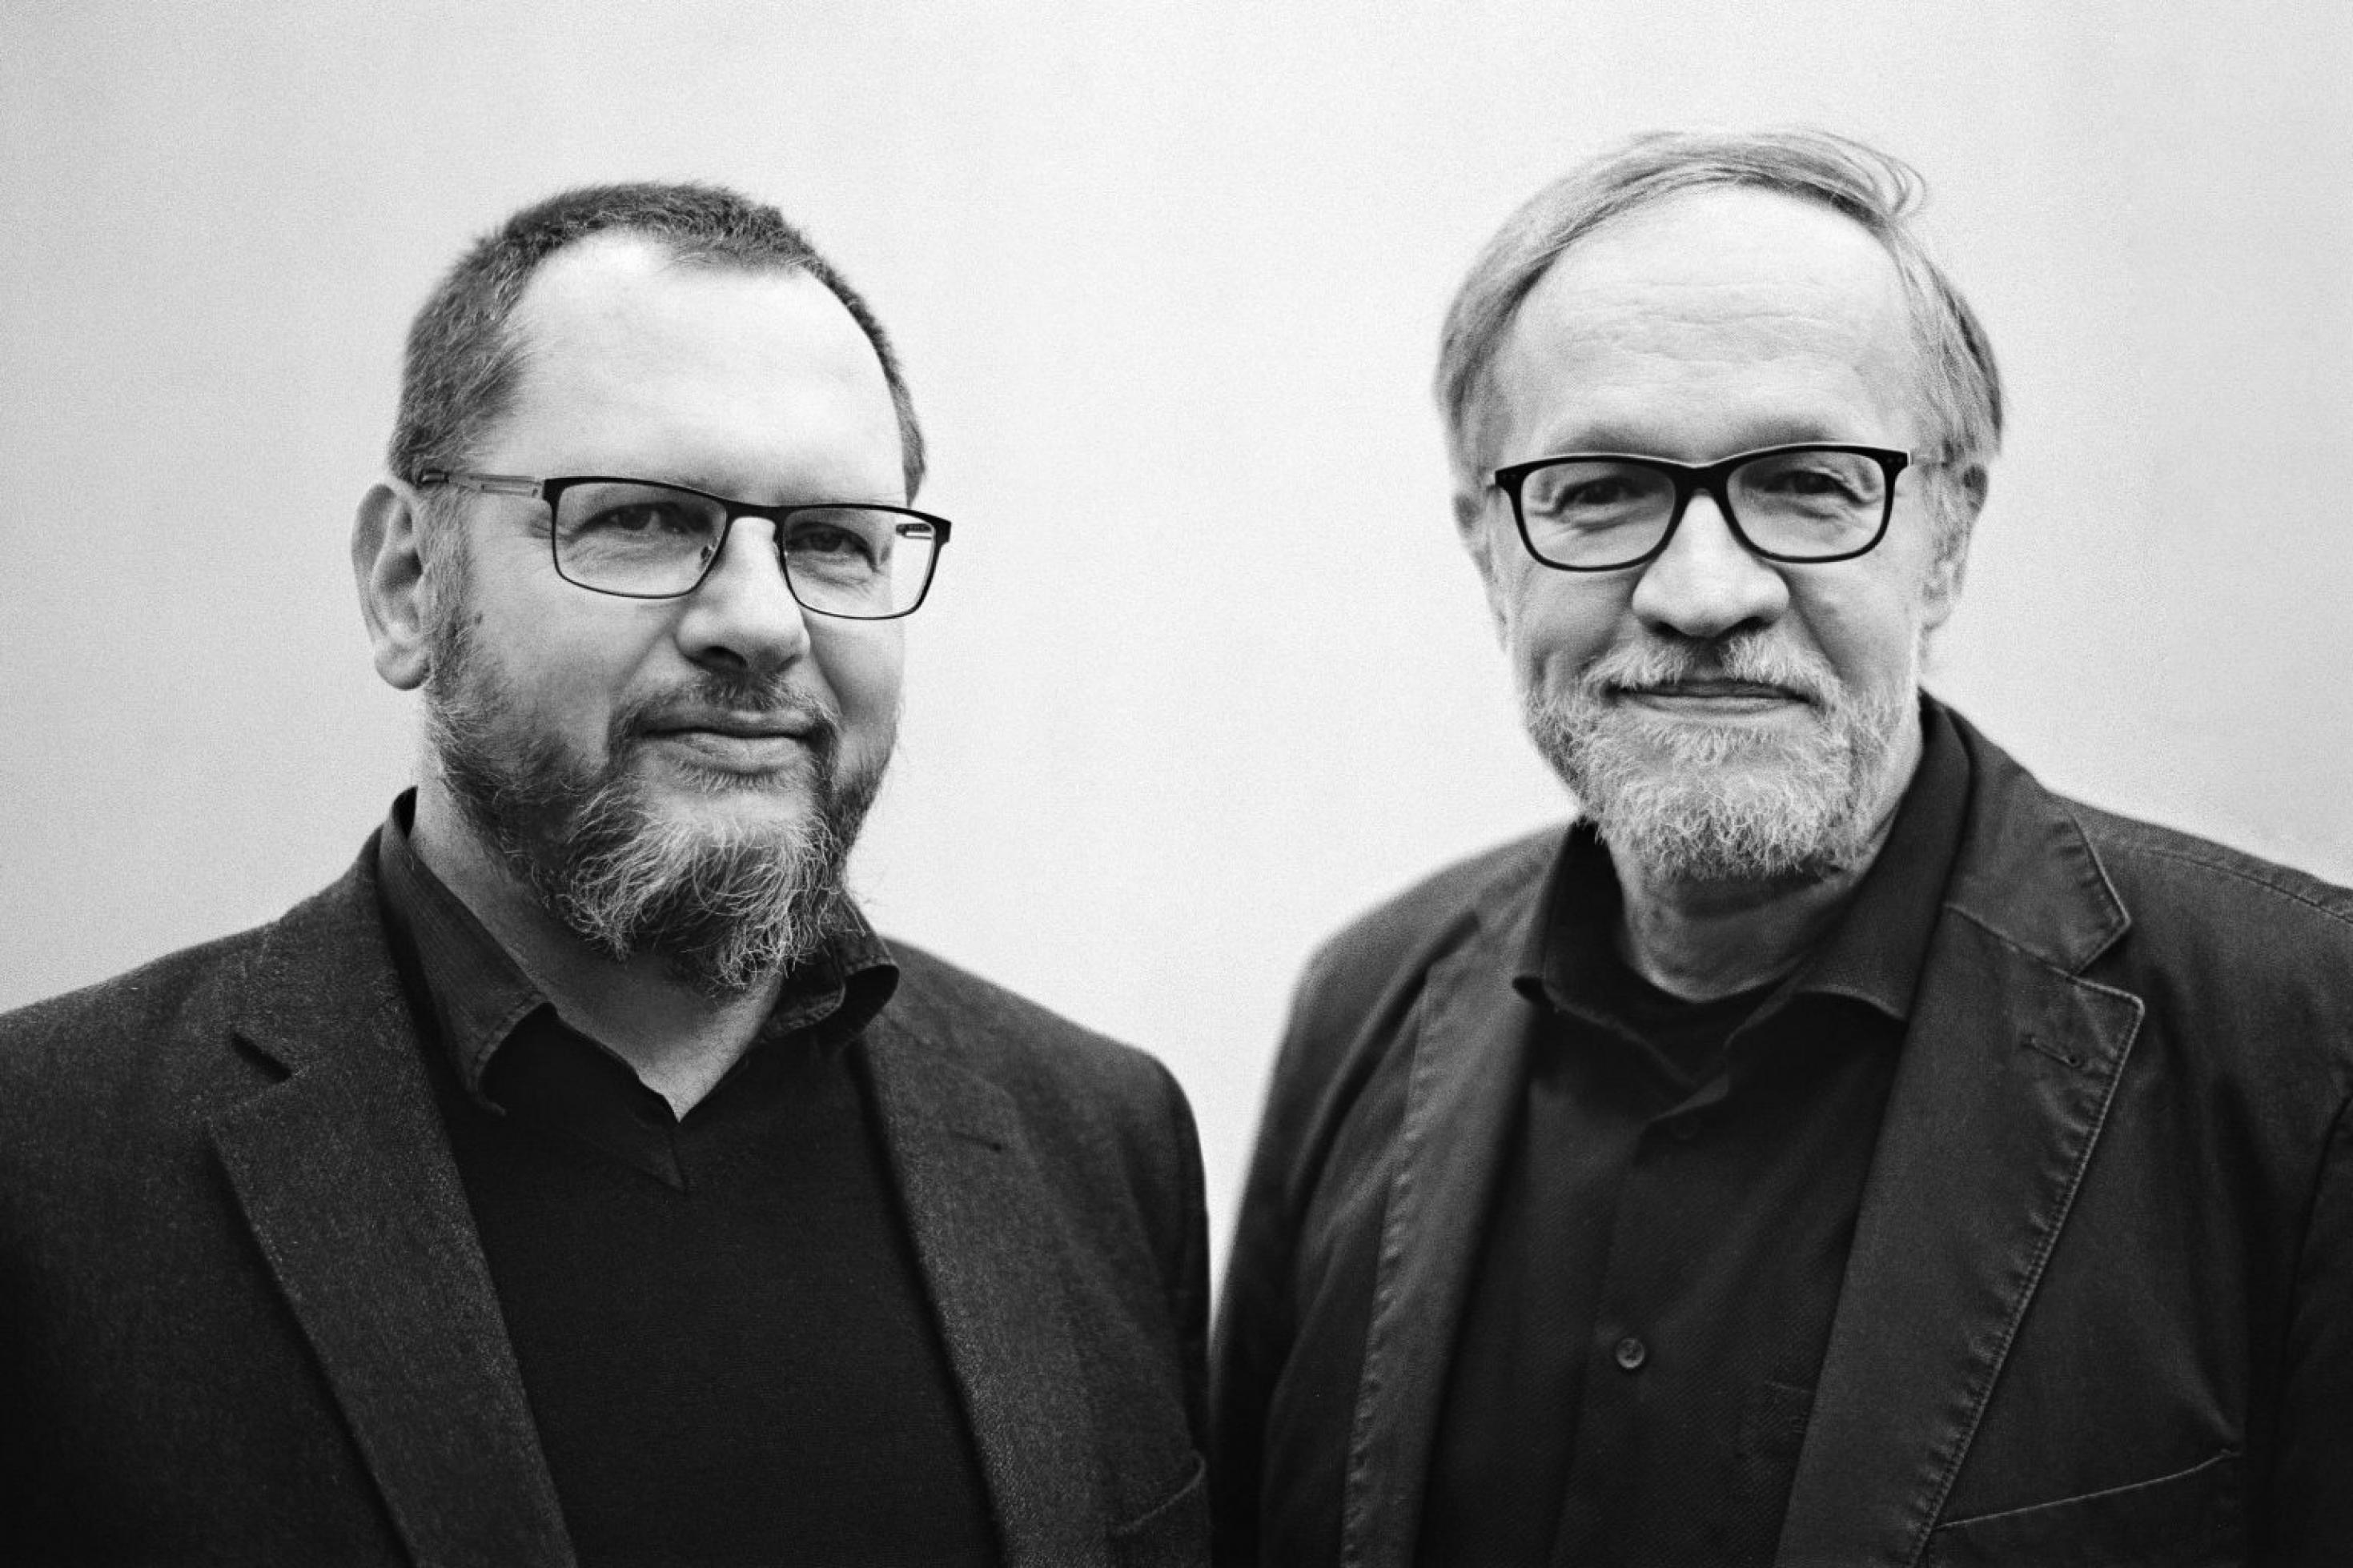 Porträts von Pierre L. Ibisch und Jörg Sommer.